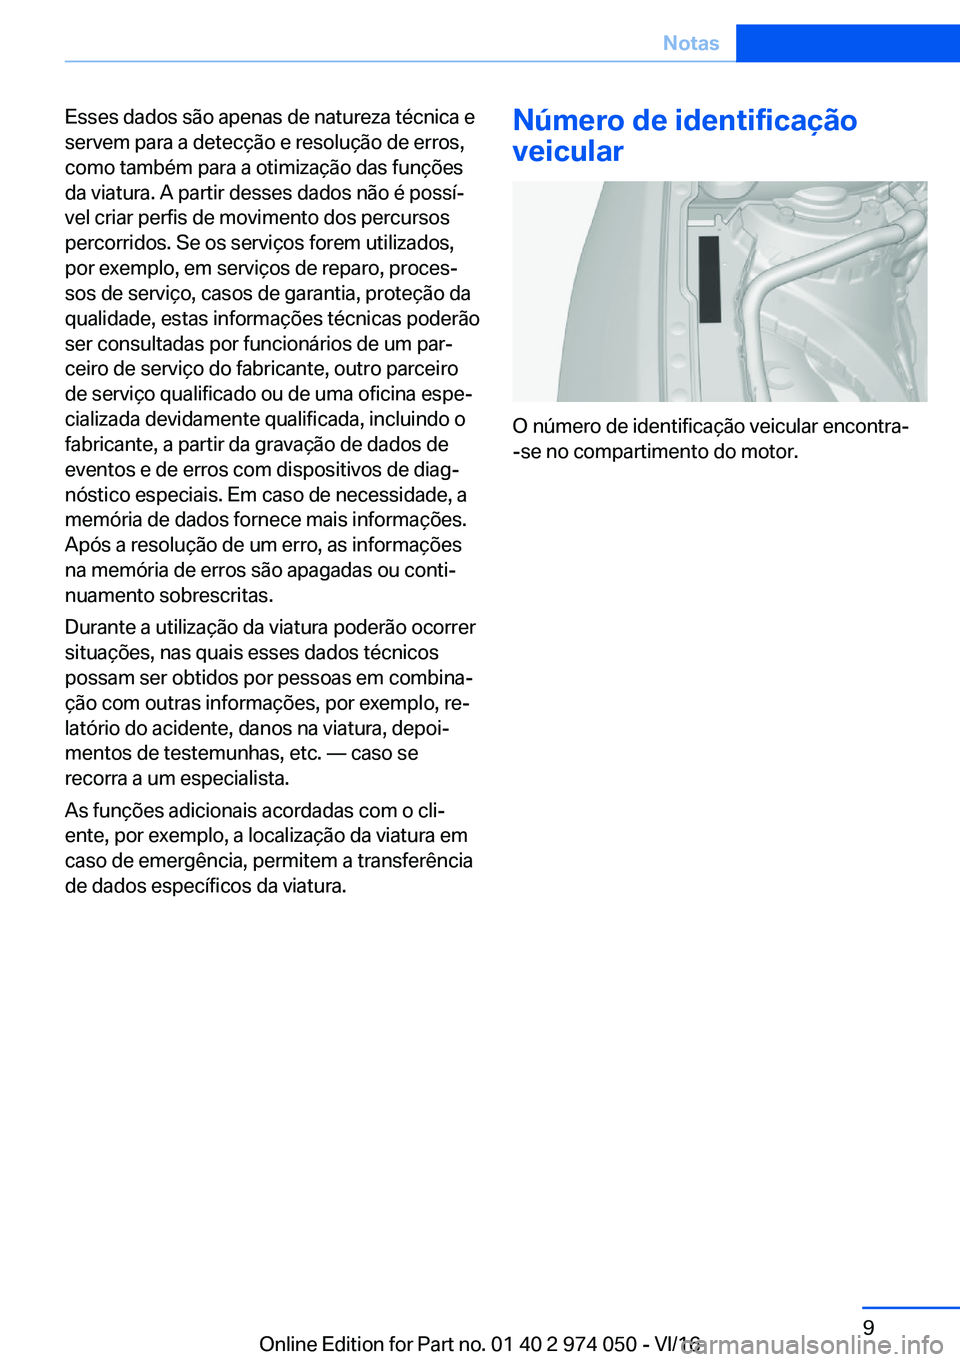 BMW M3 2017  Manual do condutor (in Portuguese) �E�s�s�e�s� �d�a�d�o�s� �s�ã�o� �a�p�e�n�a�s� �d�e� �n�a�t�u�r�e�z�a� �t�é�c�n�i�c�a� �e
�s�e�r�v�e�m� �p�a�r�a� �a� �d�e�t�e�c�